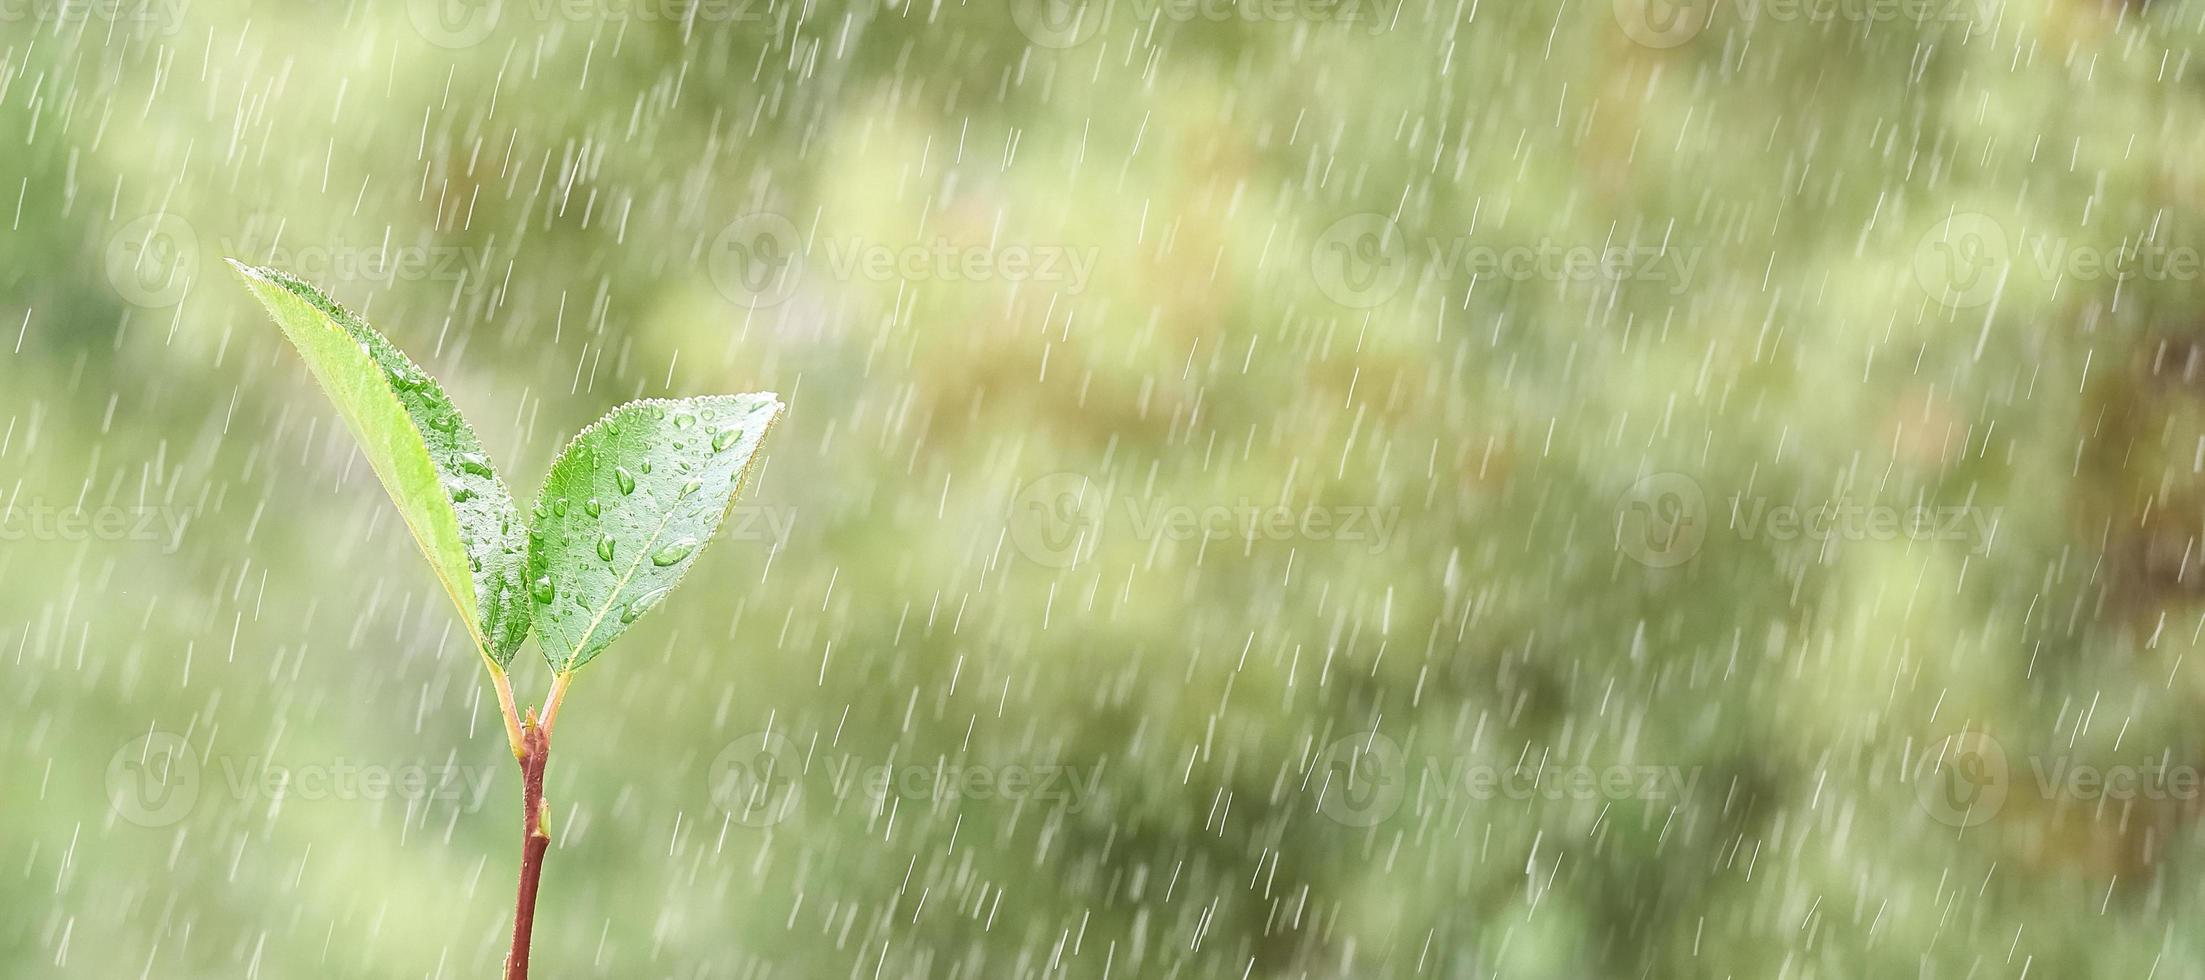 Frühlingspflanze wächst im Regen aus dem Boden, auf grünem Hintergrund in Unschärfe. Foto mit Kopierbereich.